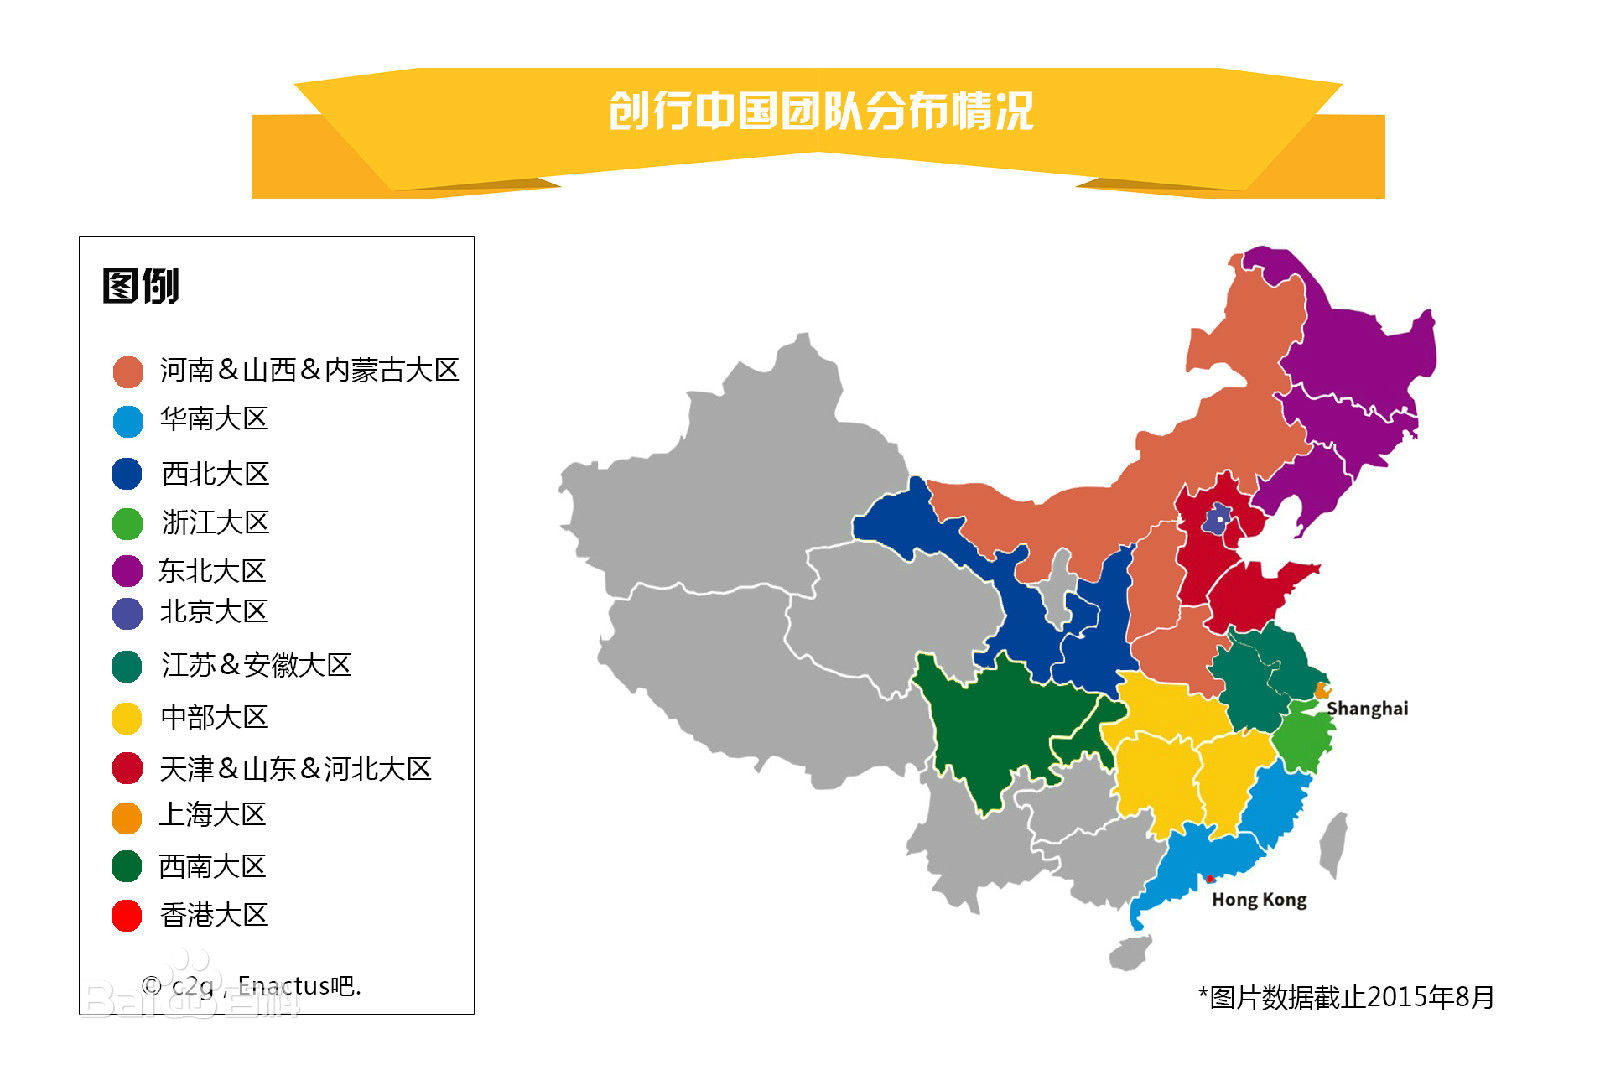 創行中國截止2015年8月的最新團隊分布情況